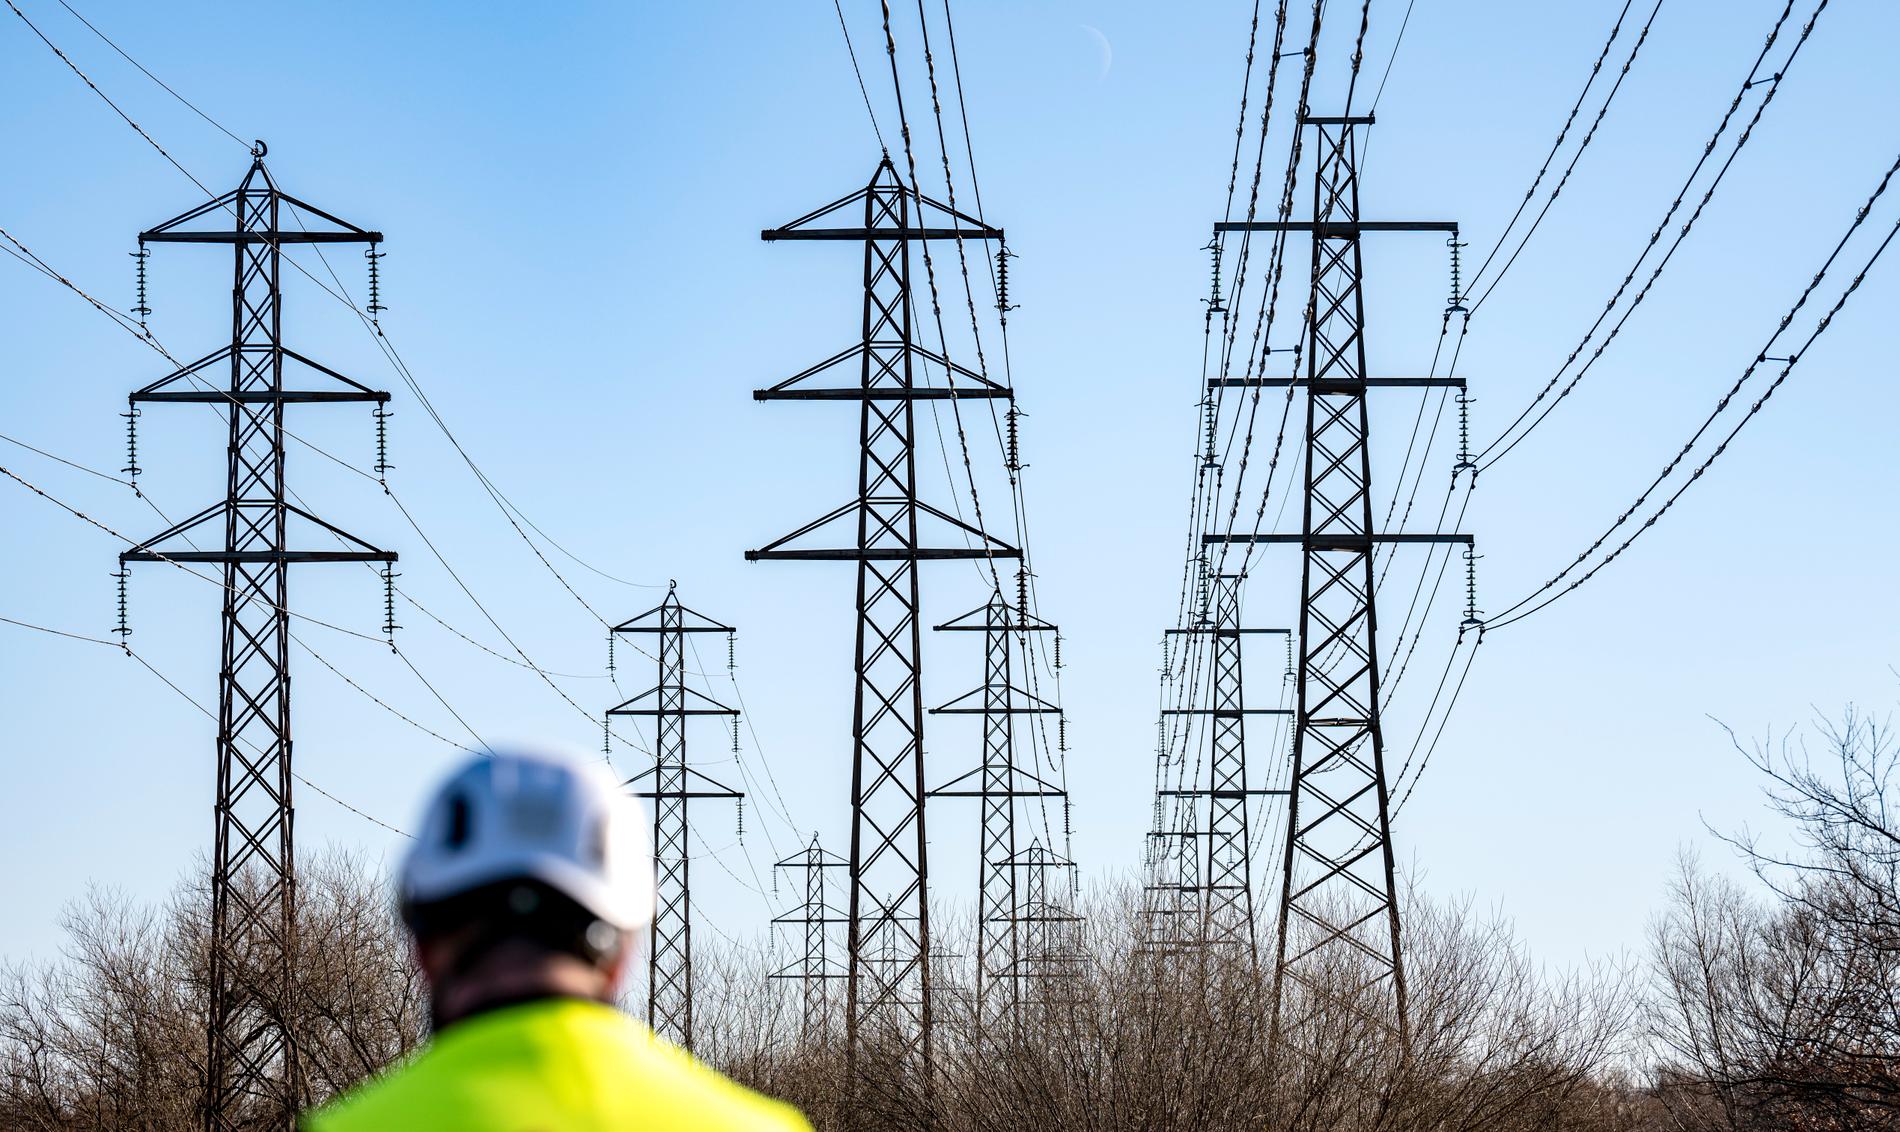 Staten behöver ta större kontroll över energimarknaden för att det ska produceras tillräckligt med el till ett rimliga priser, skriver Wolfgang Hansson.